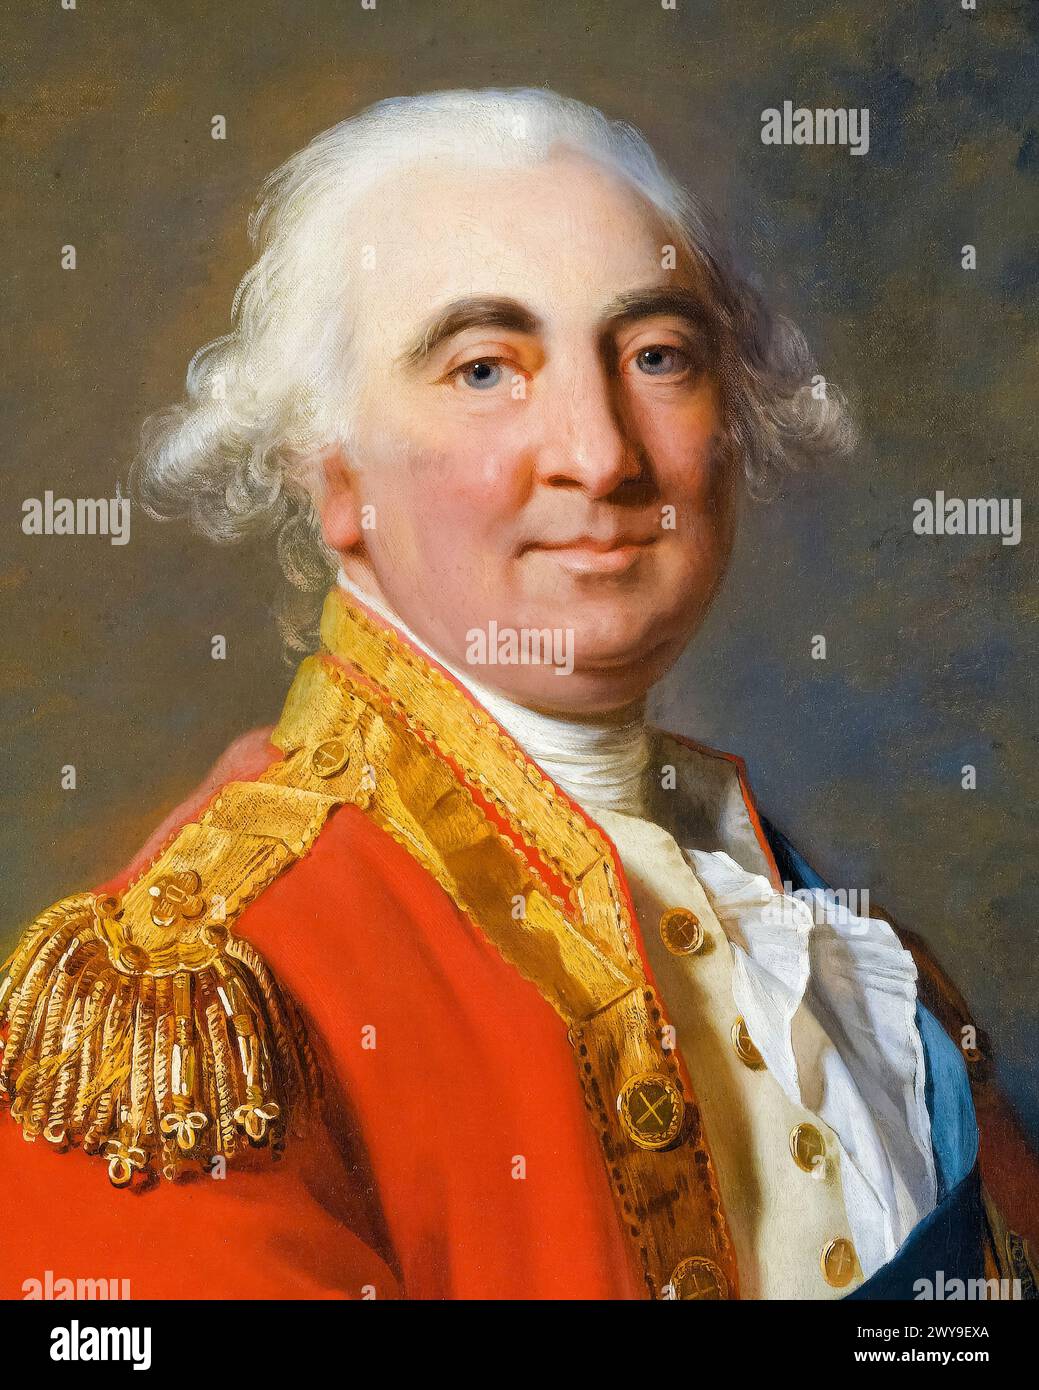 William Petty, II conte di Shelburne (1737-1805), politico Whig anglo-irlandese e primo ministro della Gran Bretagna 1782-1783, ritratto a olio su tela di Jean-Laurent Mosnier, 1791 Foto Stock